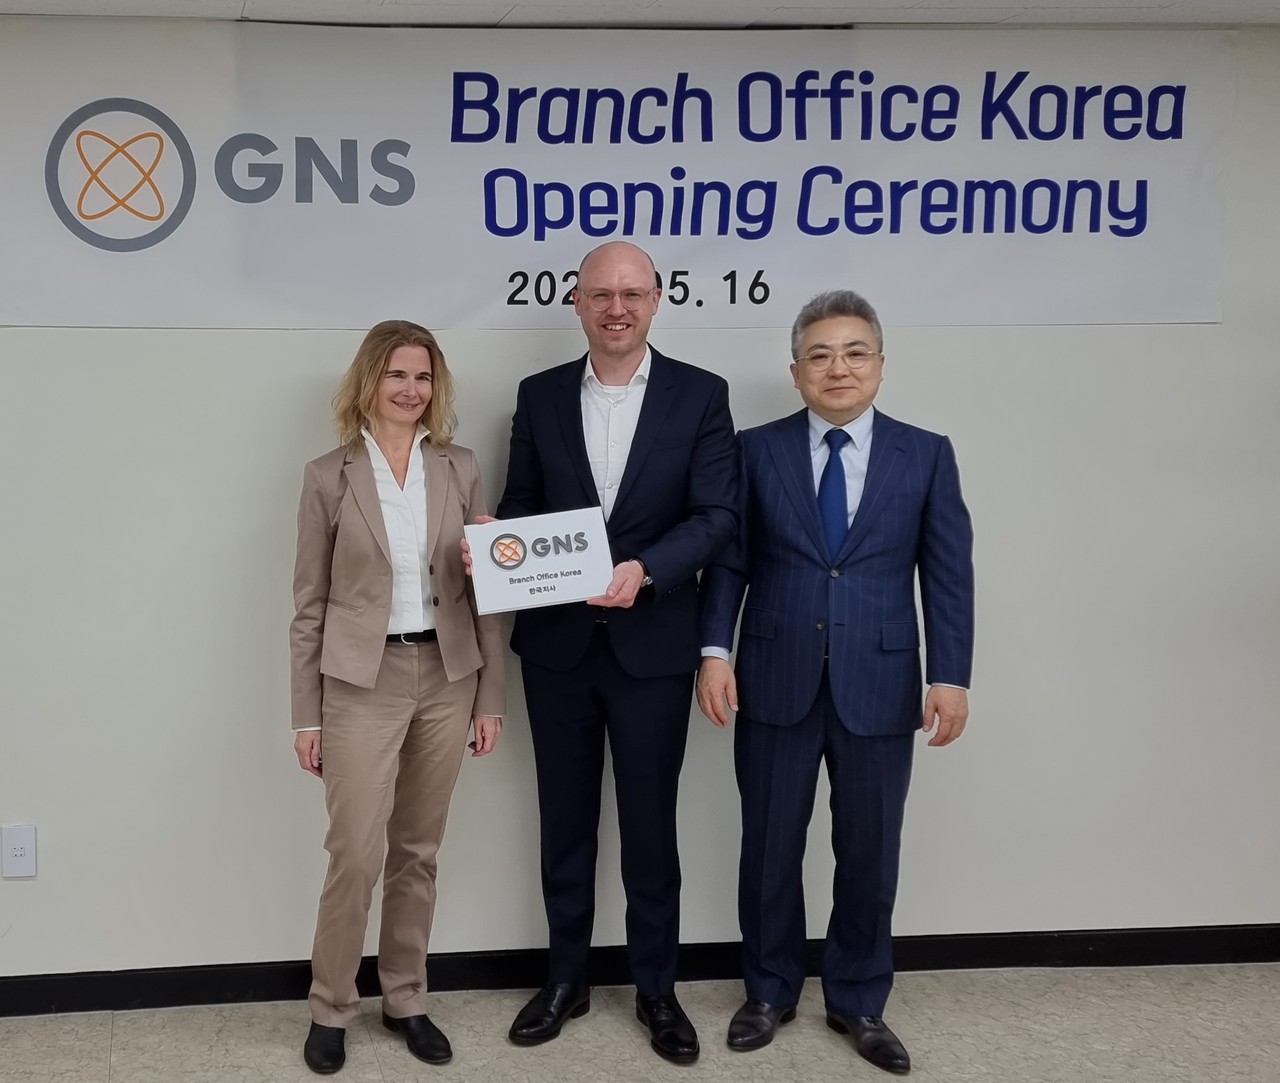 사진 왼쪽부터 GNS 사용후핵연료 사업이사 Anke Schaefer, GNS 해외사업부사장 Linus Bettermann,GNS Korea Proxy 김두일 박사